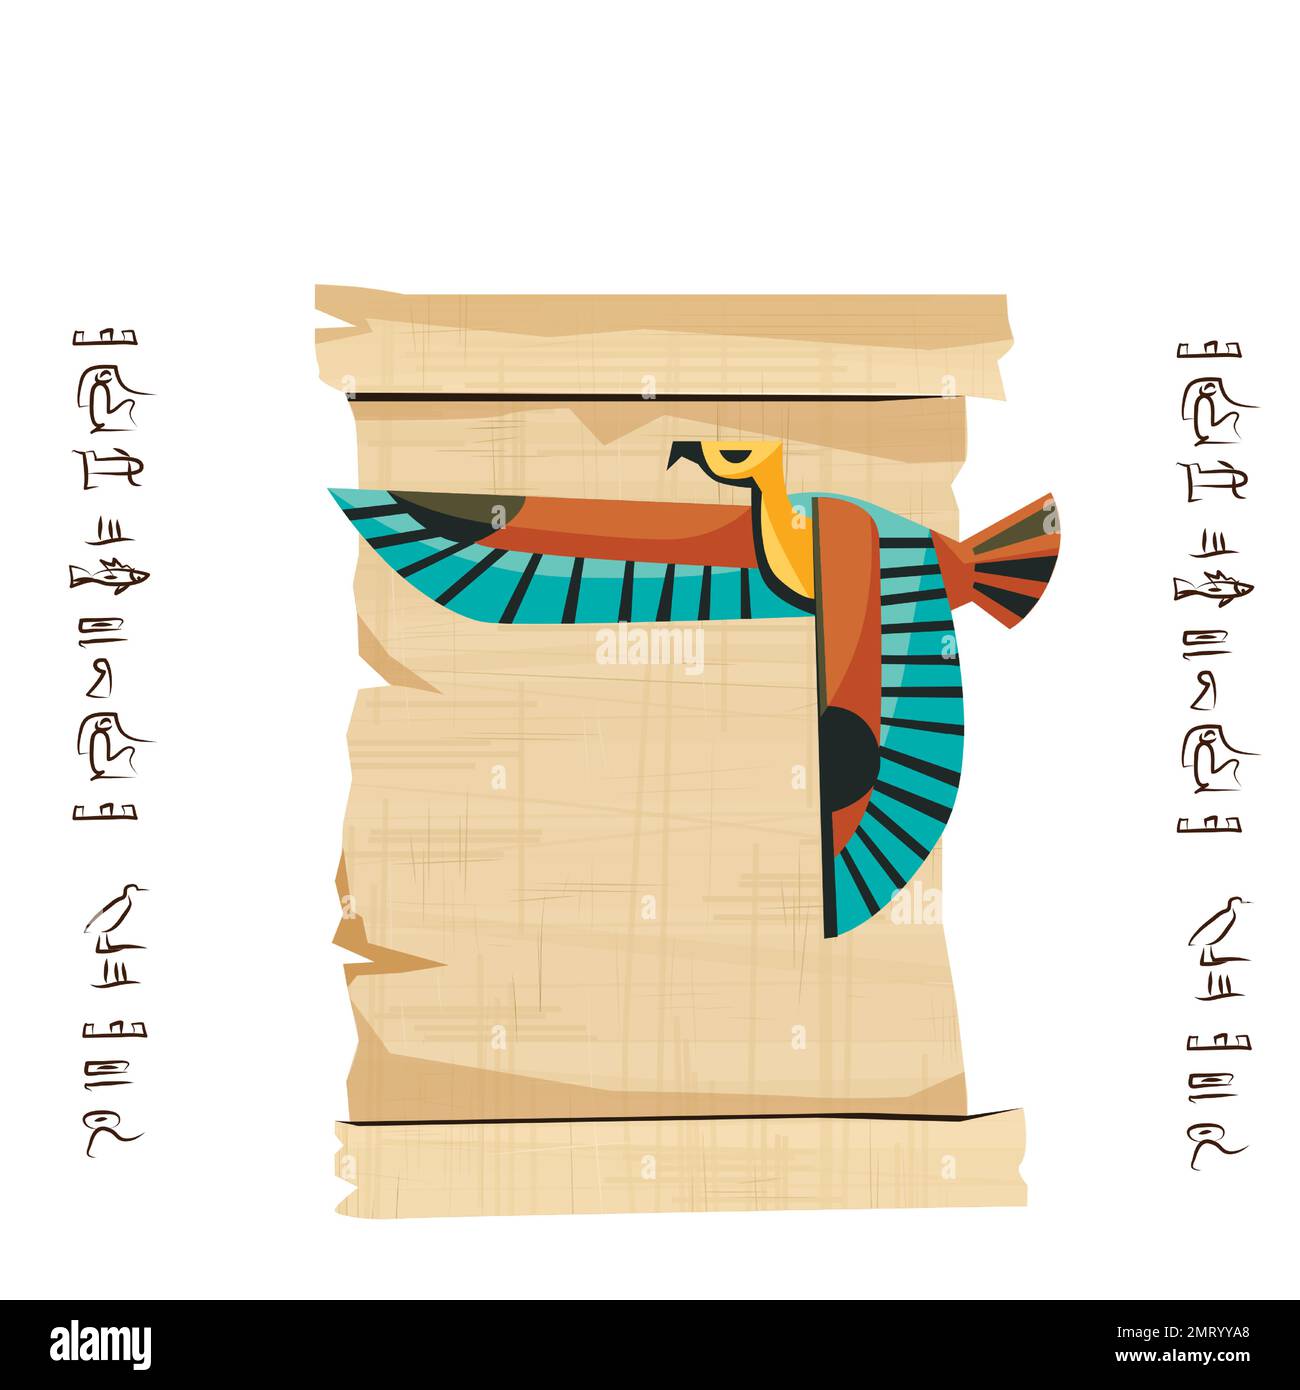 Alte ägyptische Papyrus-Schriftrolle mit fliegender Vogelfigur Cartoon-Vektordarstellung. Ägyptisches Kultursymbol, leeres, entfaltetes antikes Papier, fliegender Falke und Hieroglyphen, isoliert auf Weiß Stock Vektor